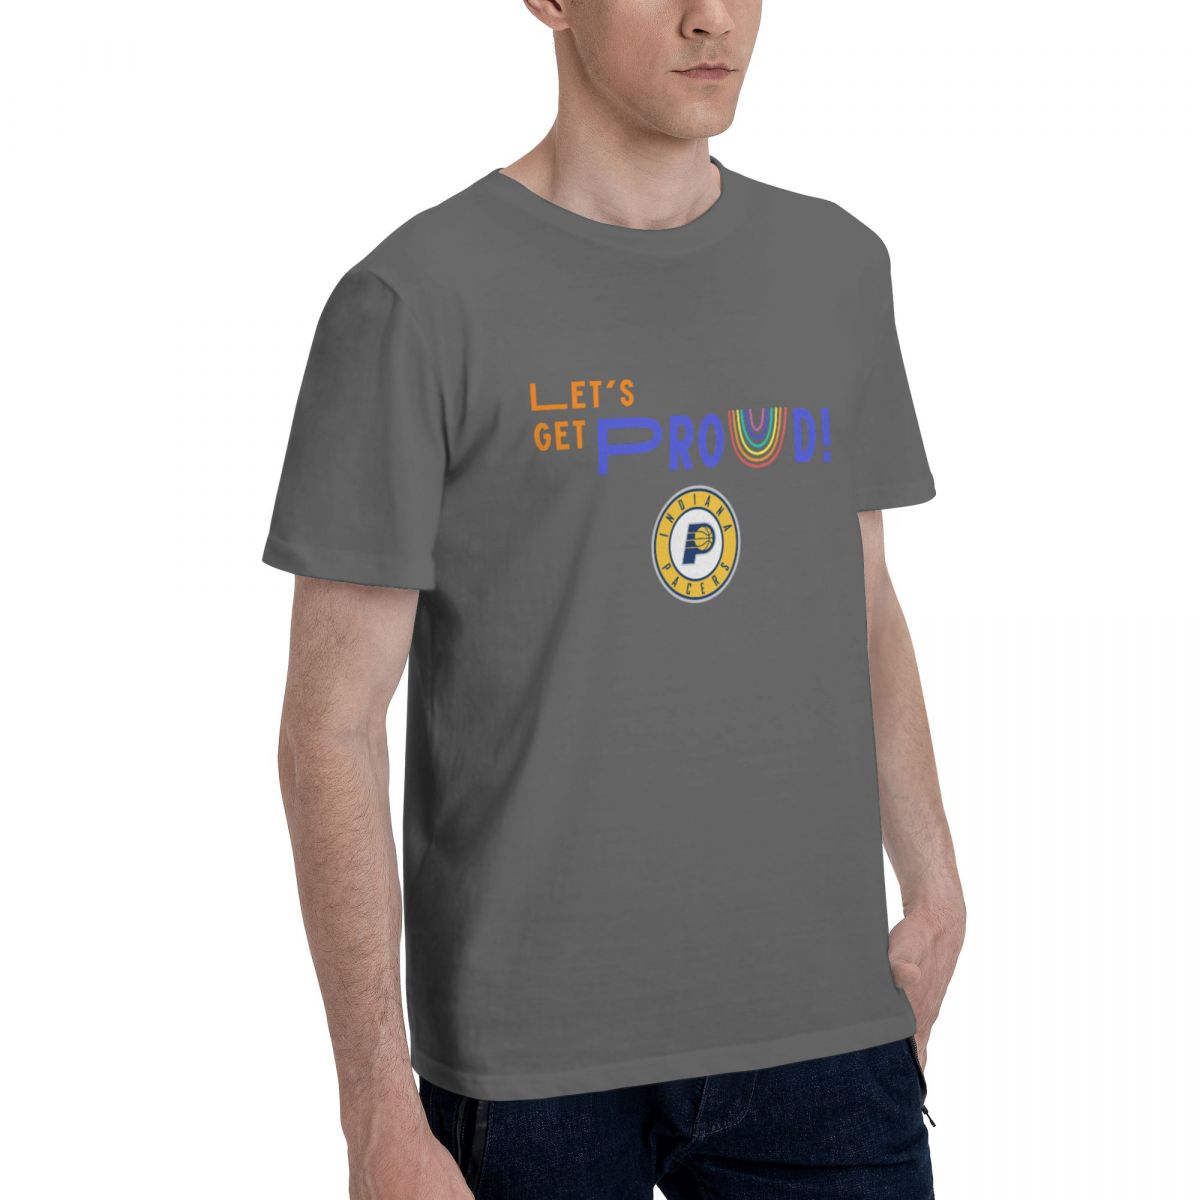 Indiana Pacers Let's Get Proud Men's Cotton Crewneck T-Shirt